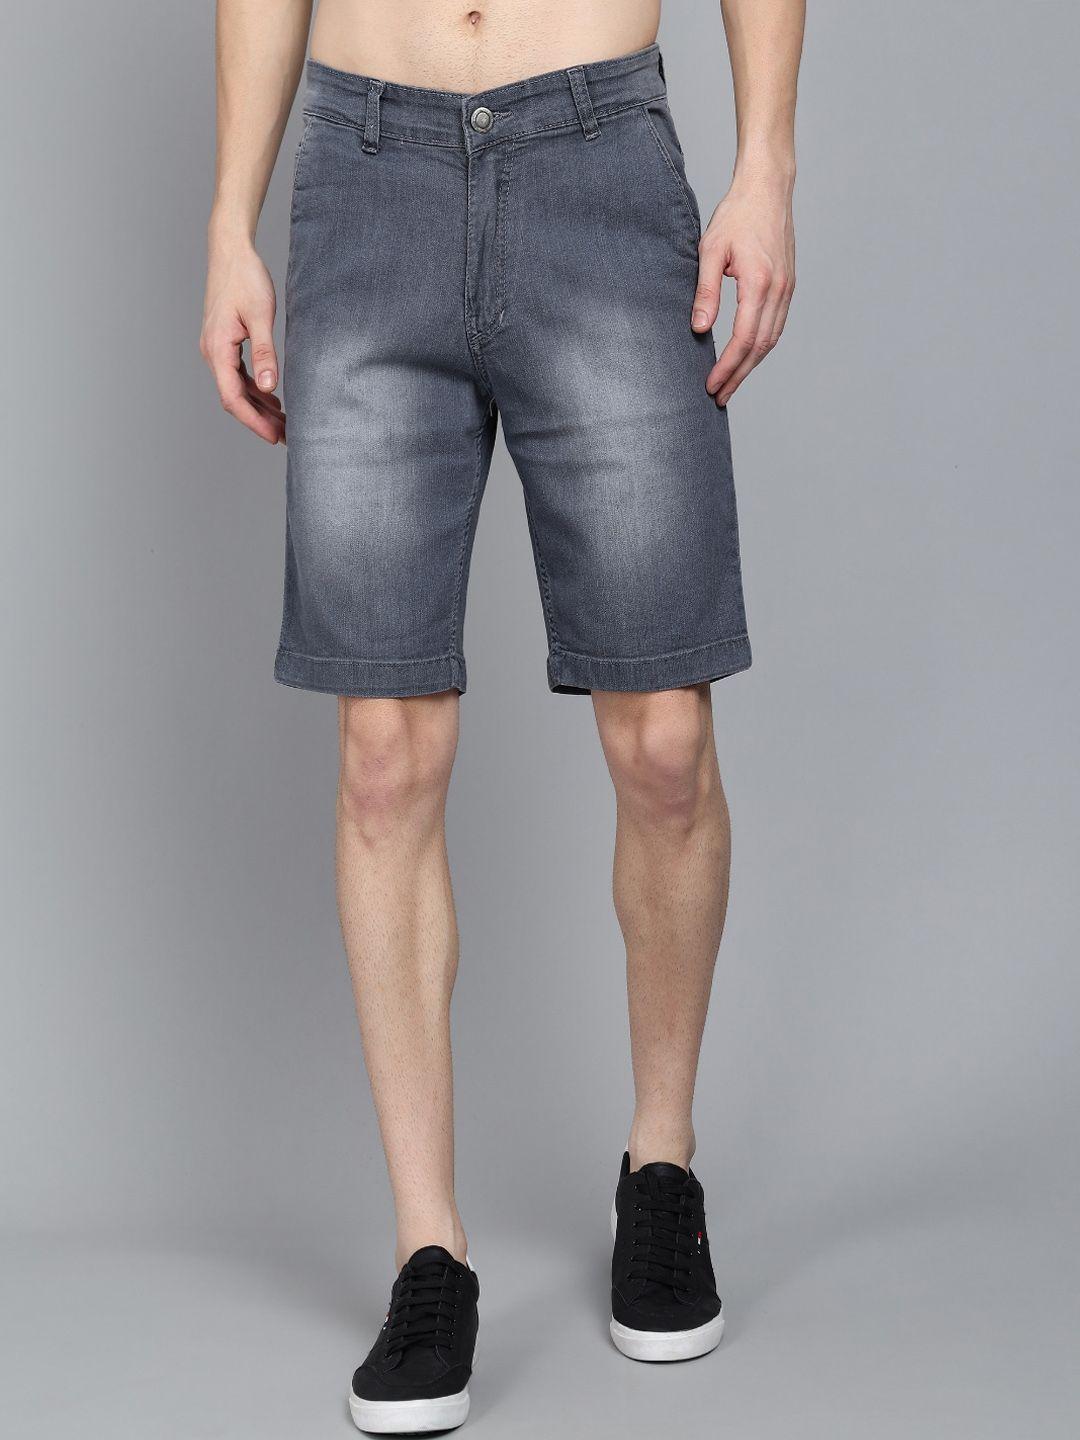 studio nexx men grey washed denim denim shorts technology